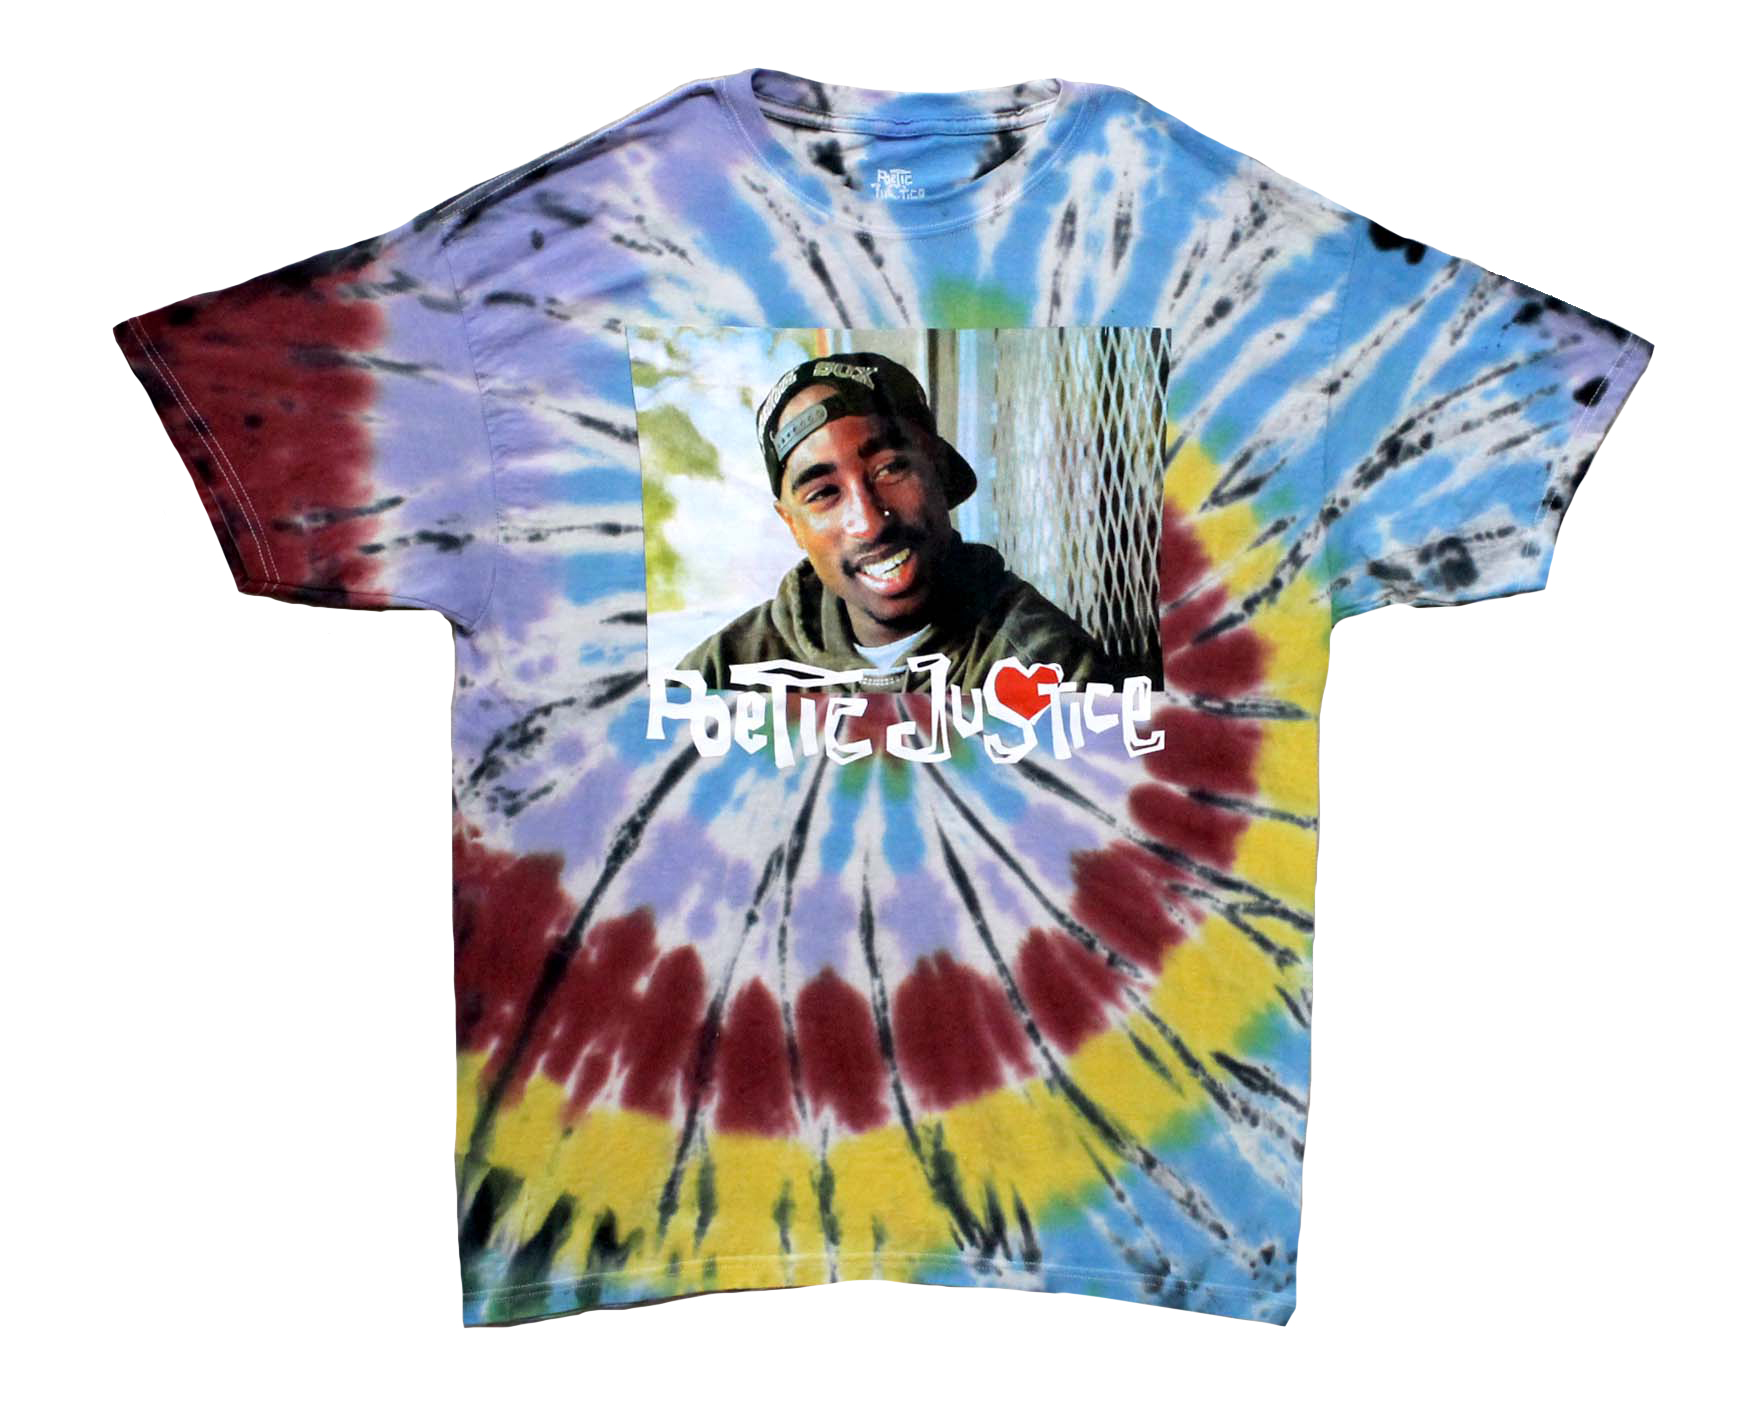 Tupac Poetic Justice - Swirl Tye-dye - Vancouver Rock Shop